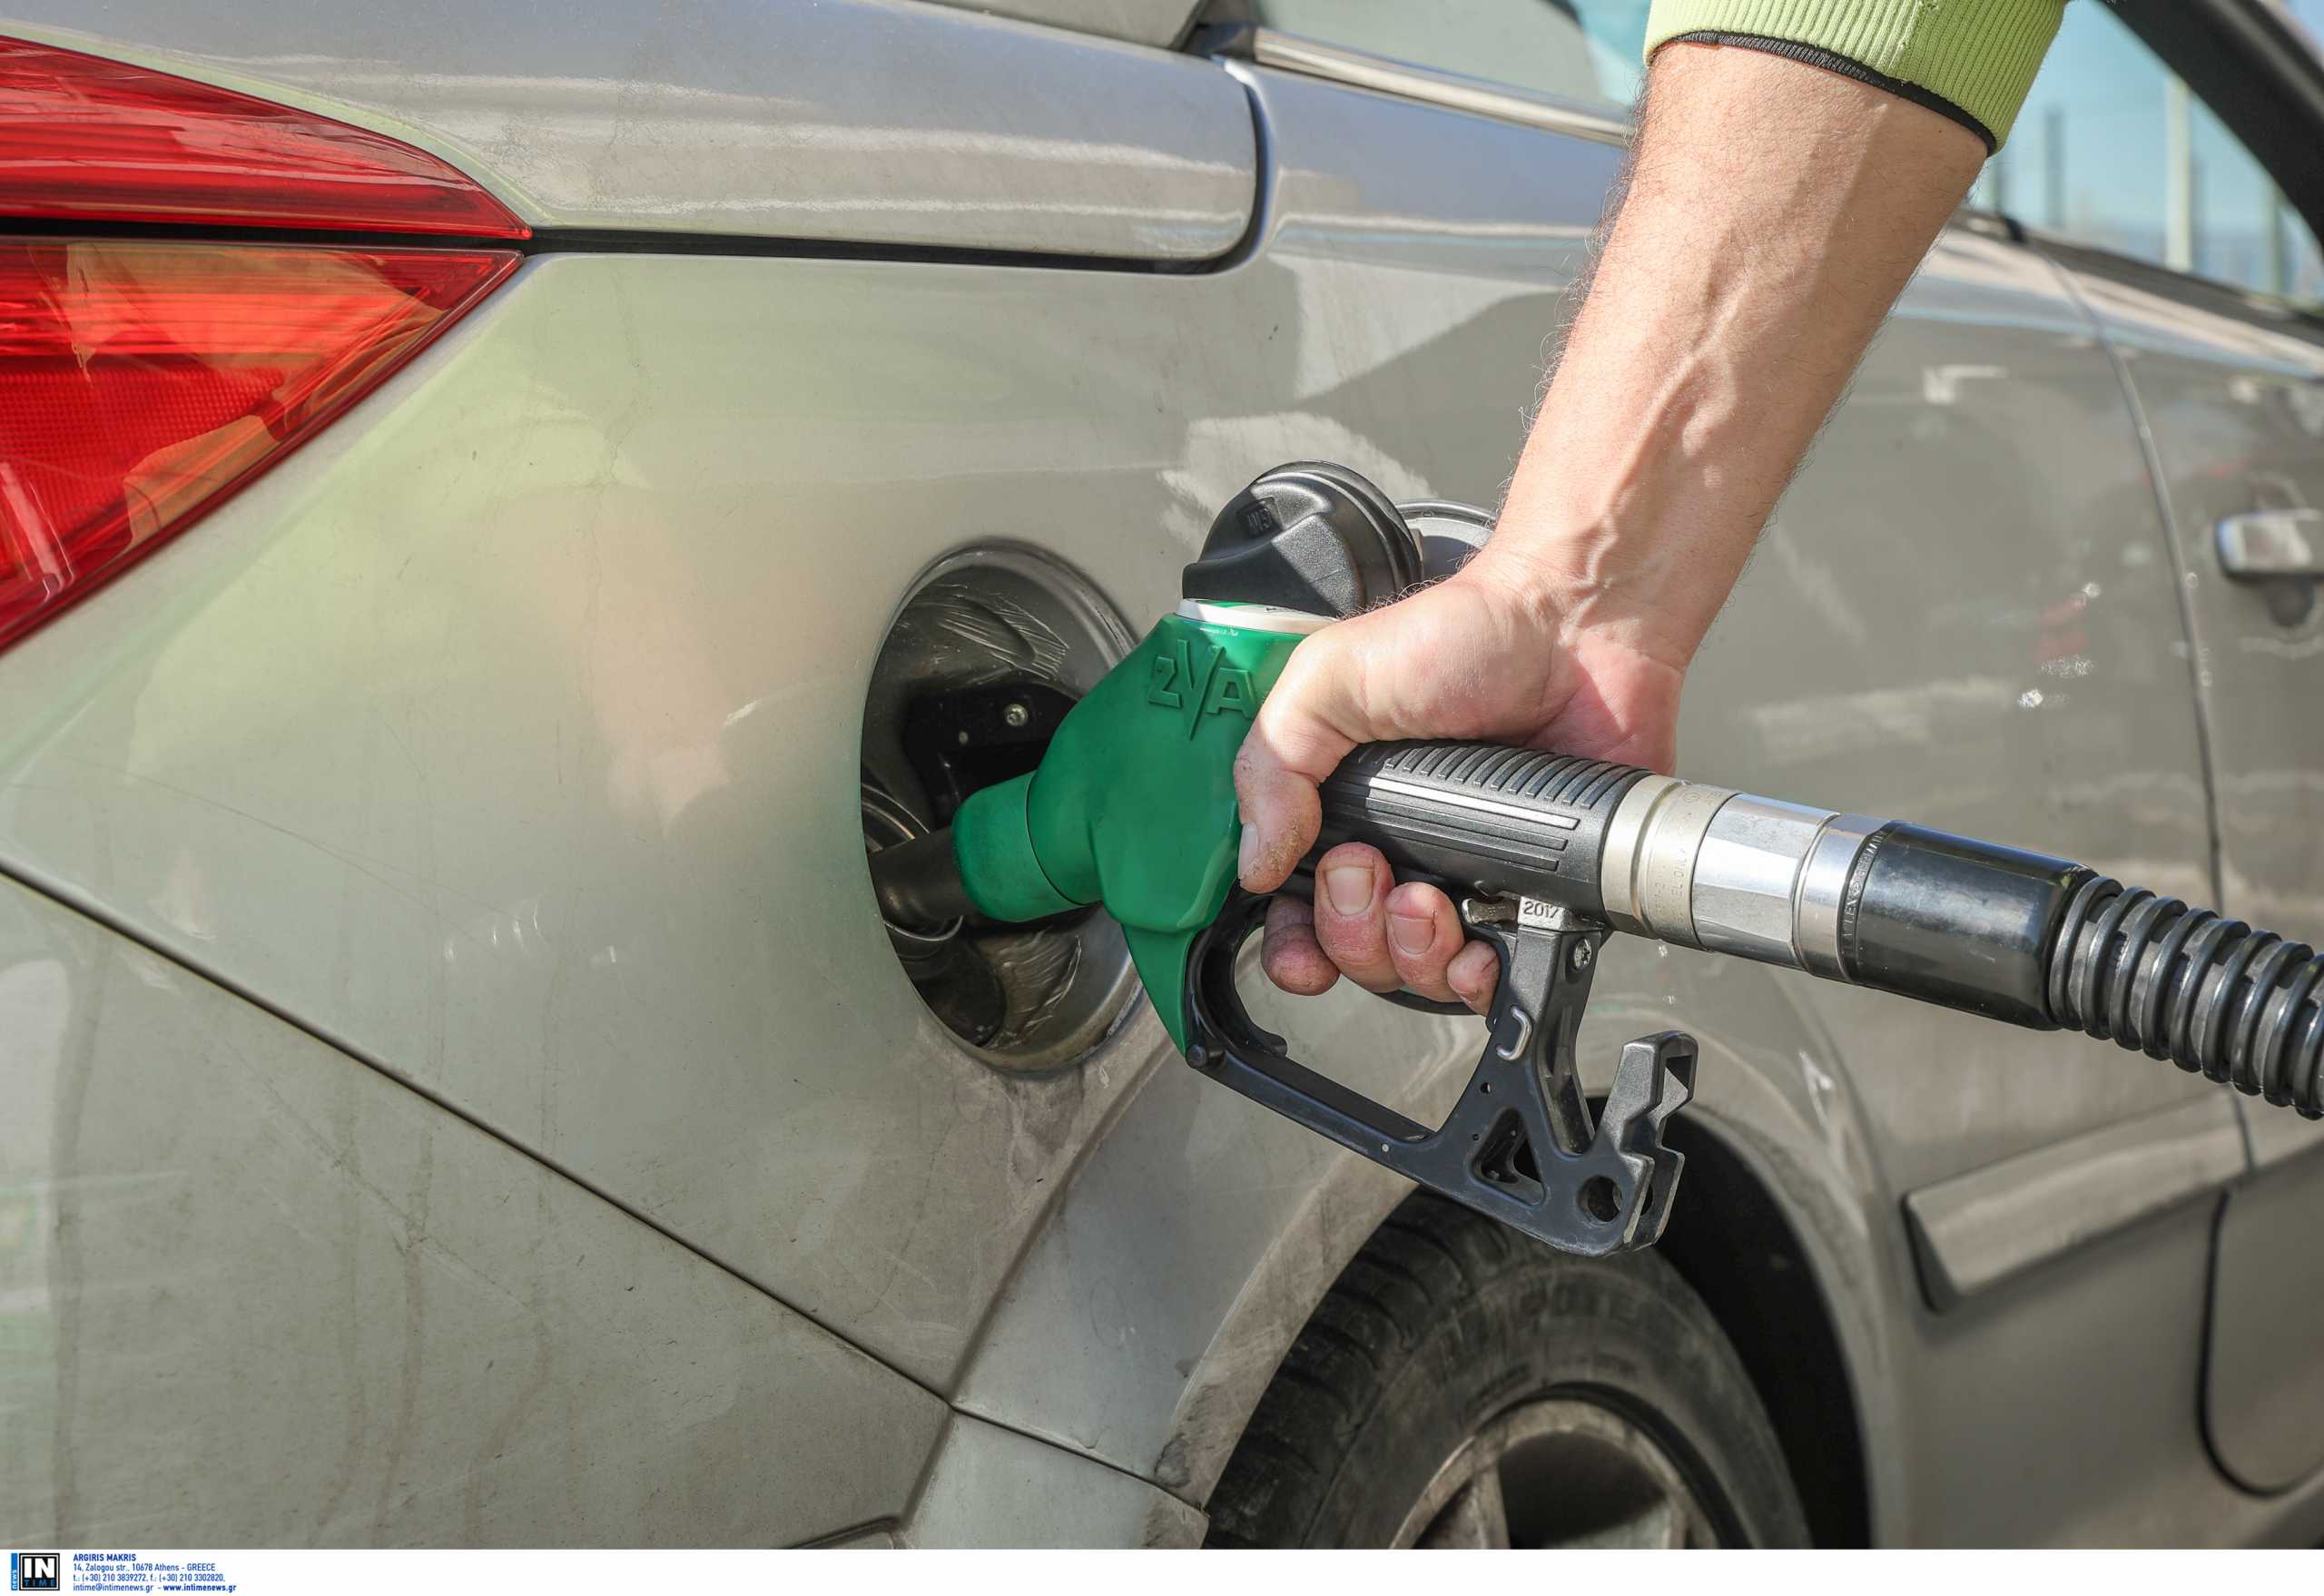 Επίδομα βενζίνης: Όσα πρέπει να γνωρίζετε για την αίτηση και την ψηφιακή κάρτα